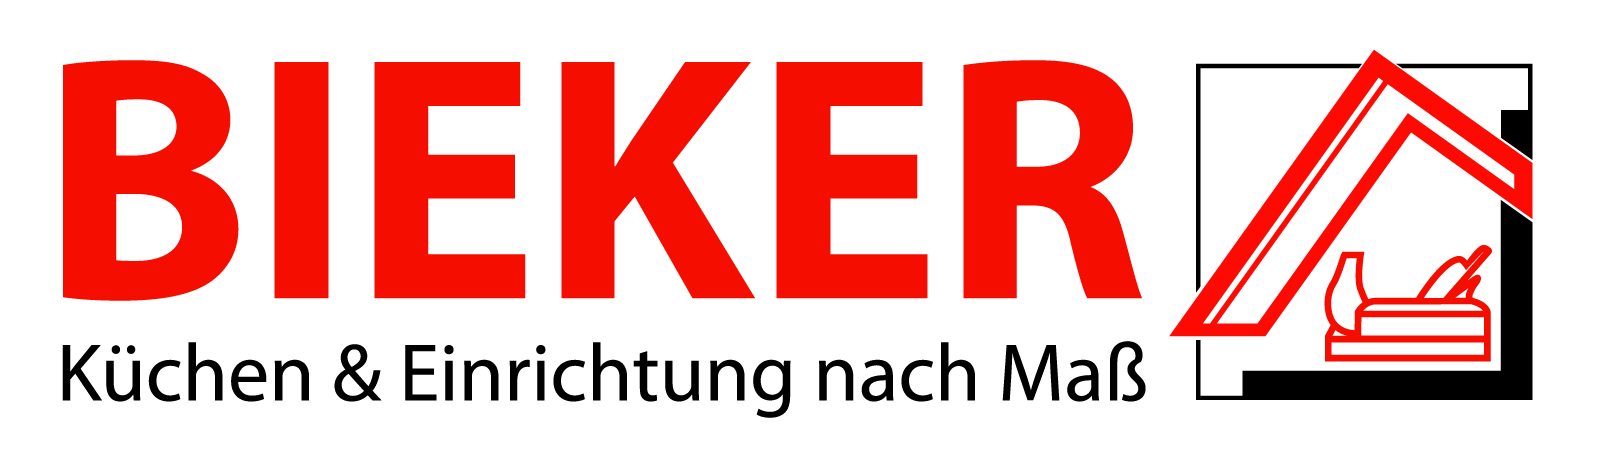 BIEKER – Küchen & Einrichtung nach Maß